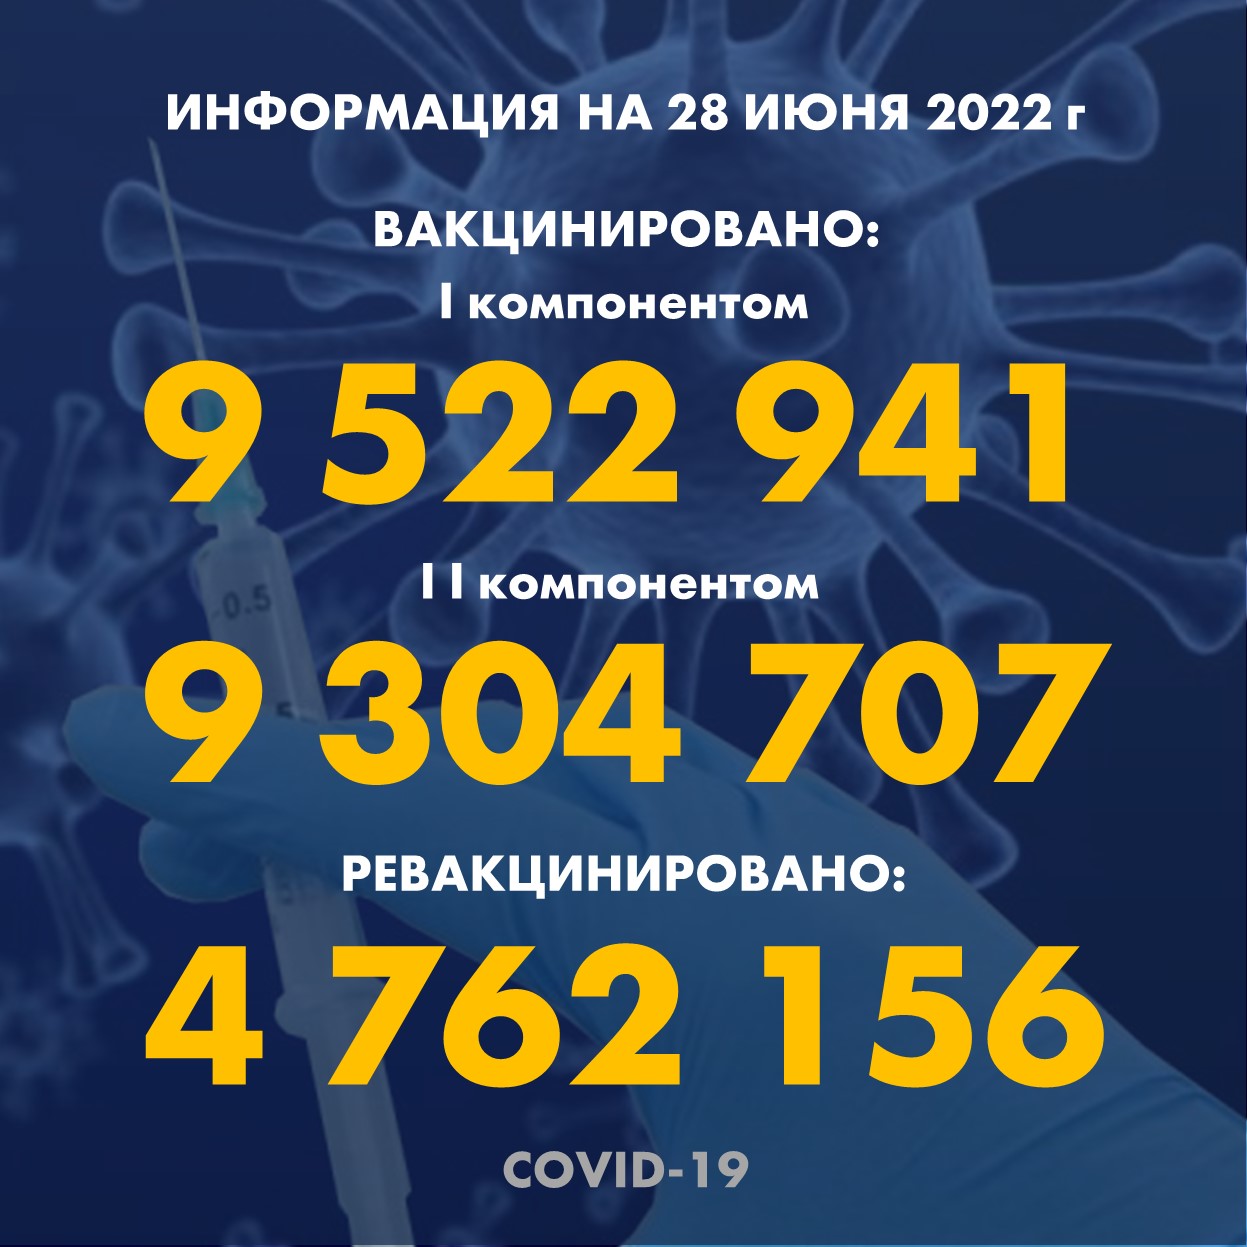 Количество людей, получивших вакцину Рfizer в Казахстане по состоянию на 28 июня 2022 года